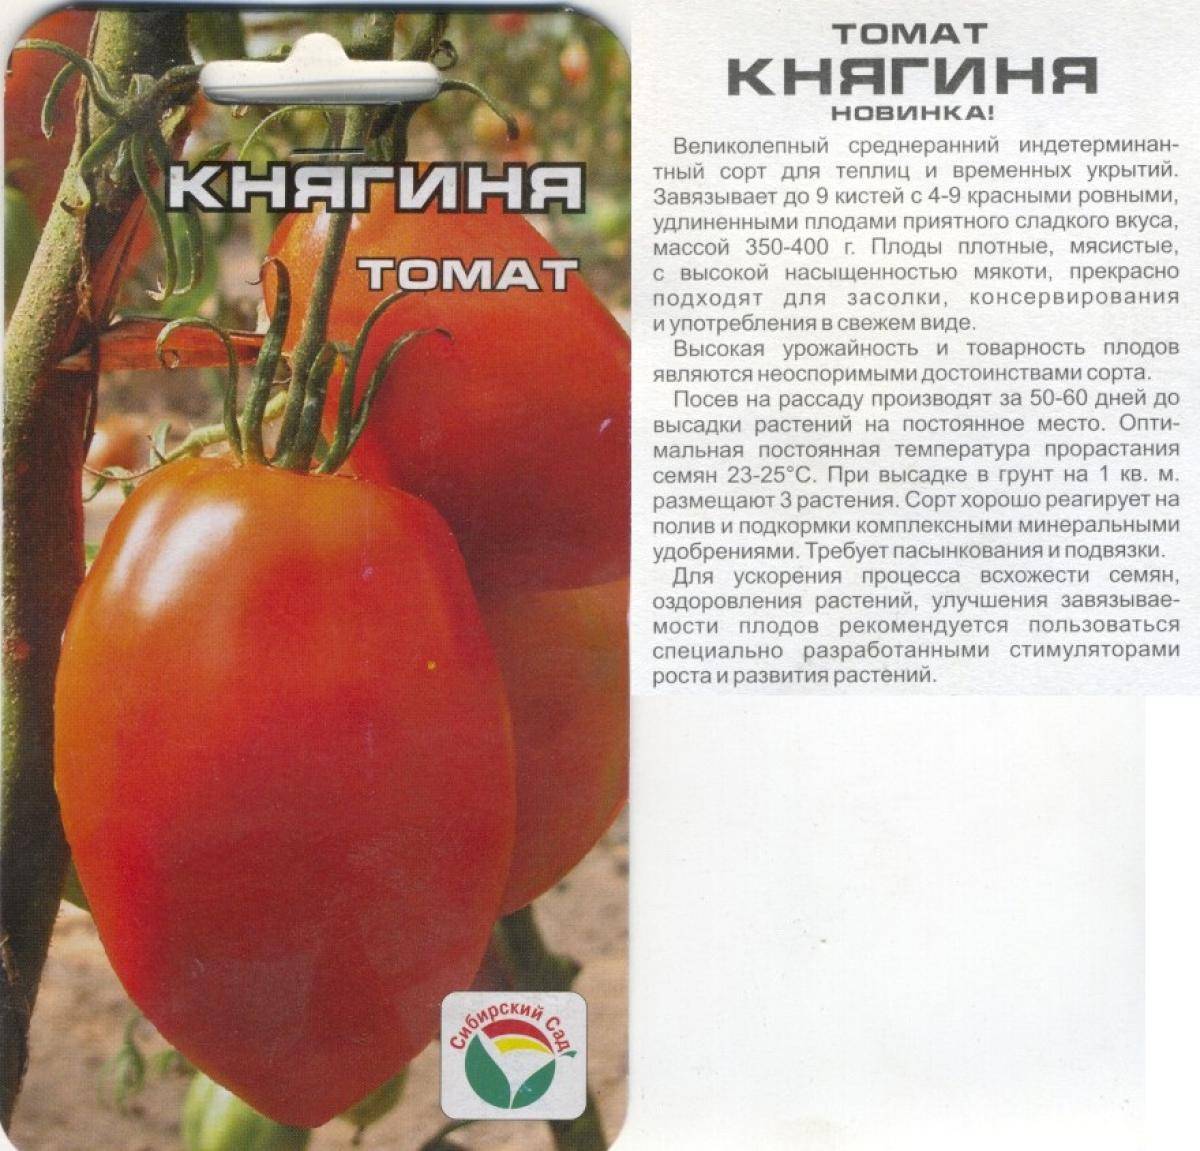 Детерминантные и индетерминантные сорта томатов — в чем разница